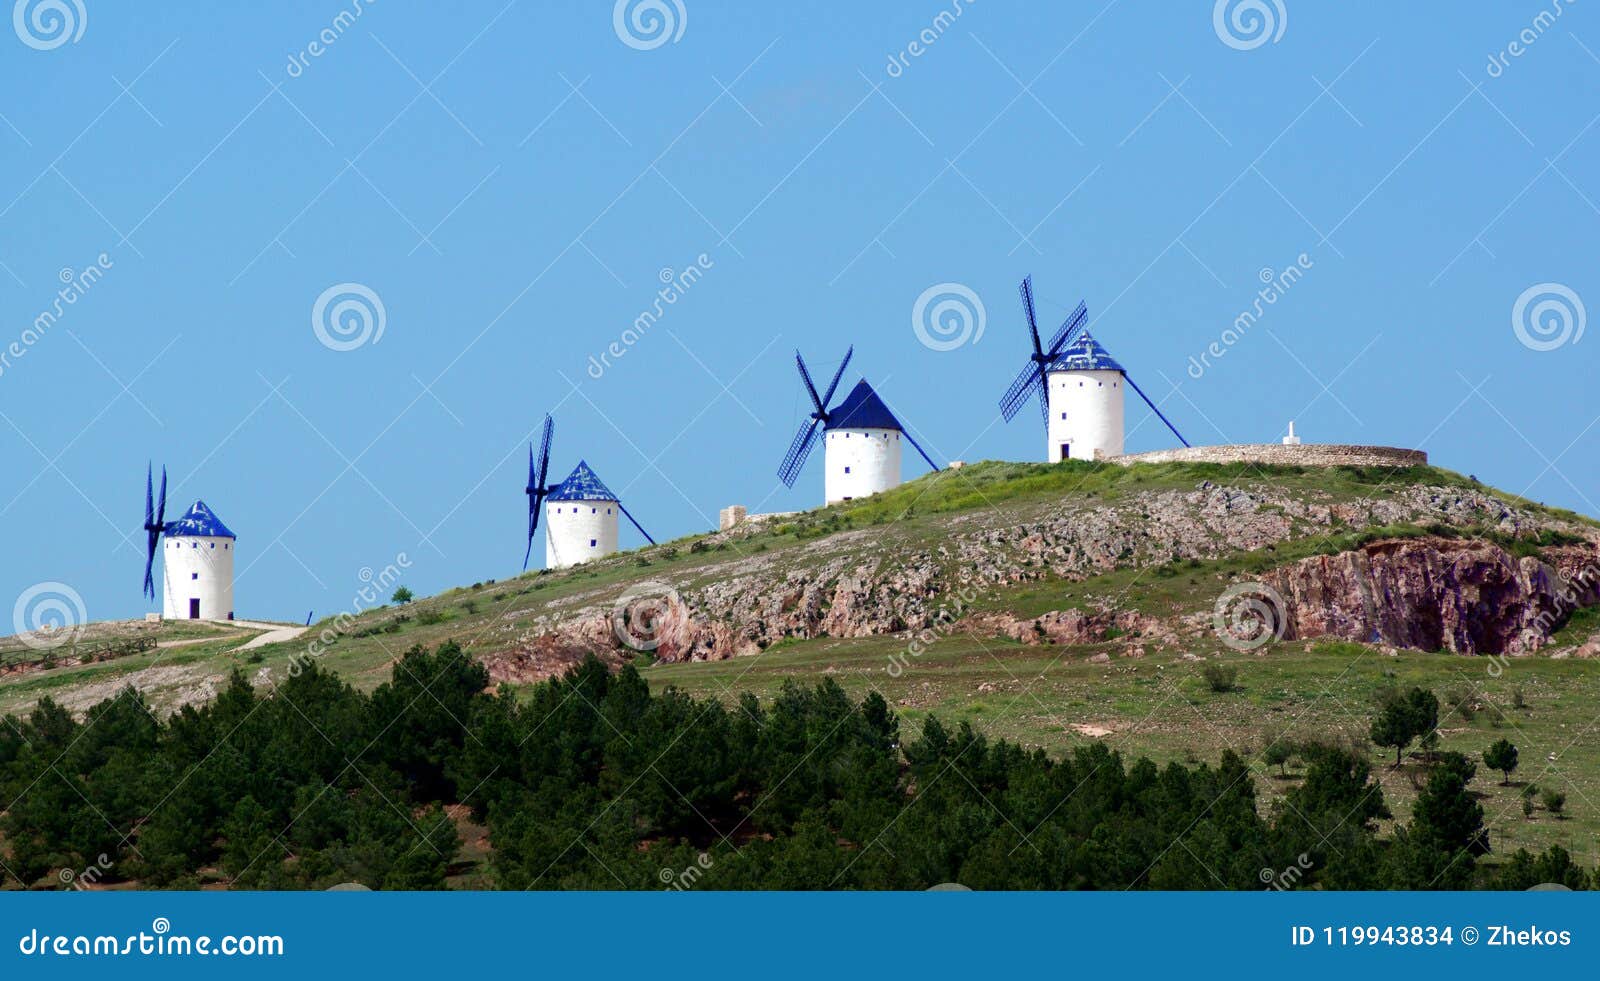 windmills molinos de viento alcazar de san juan, spain